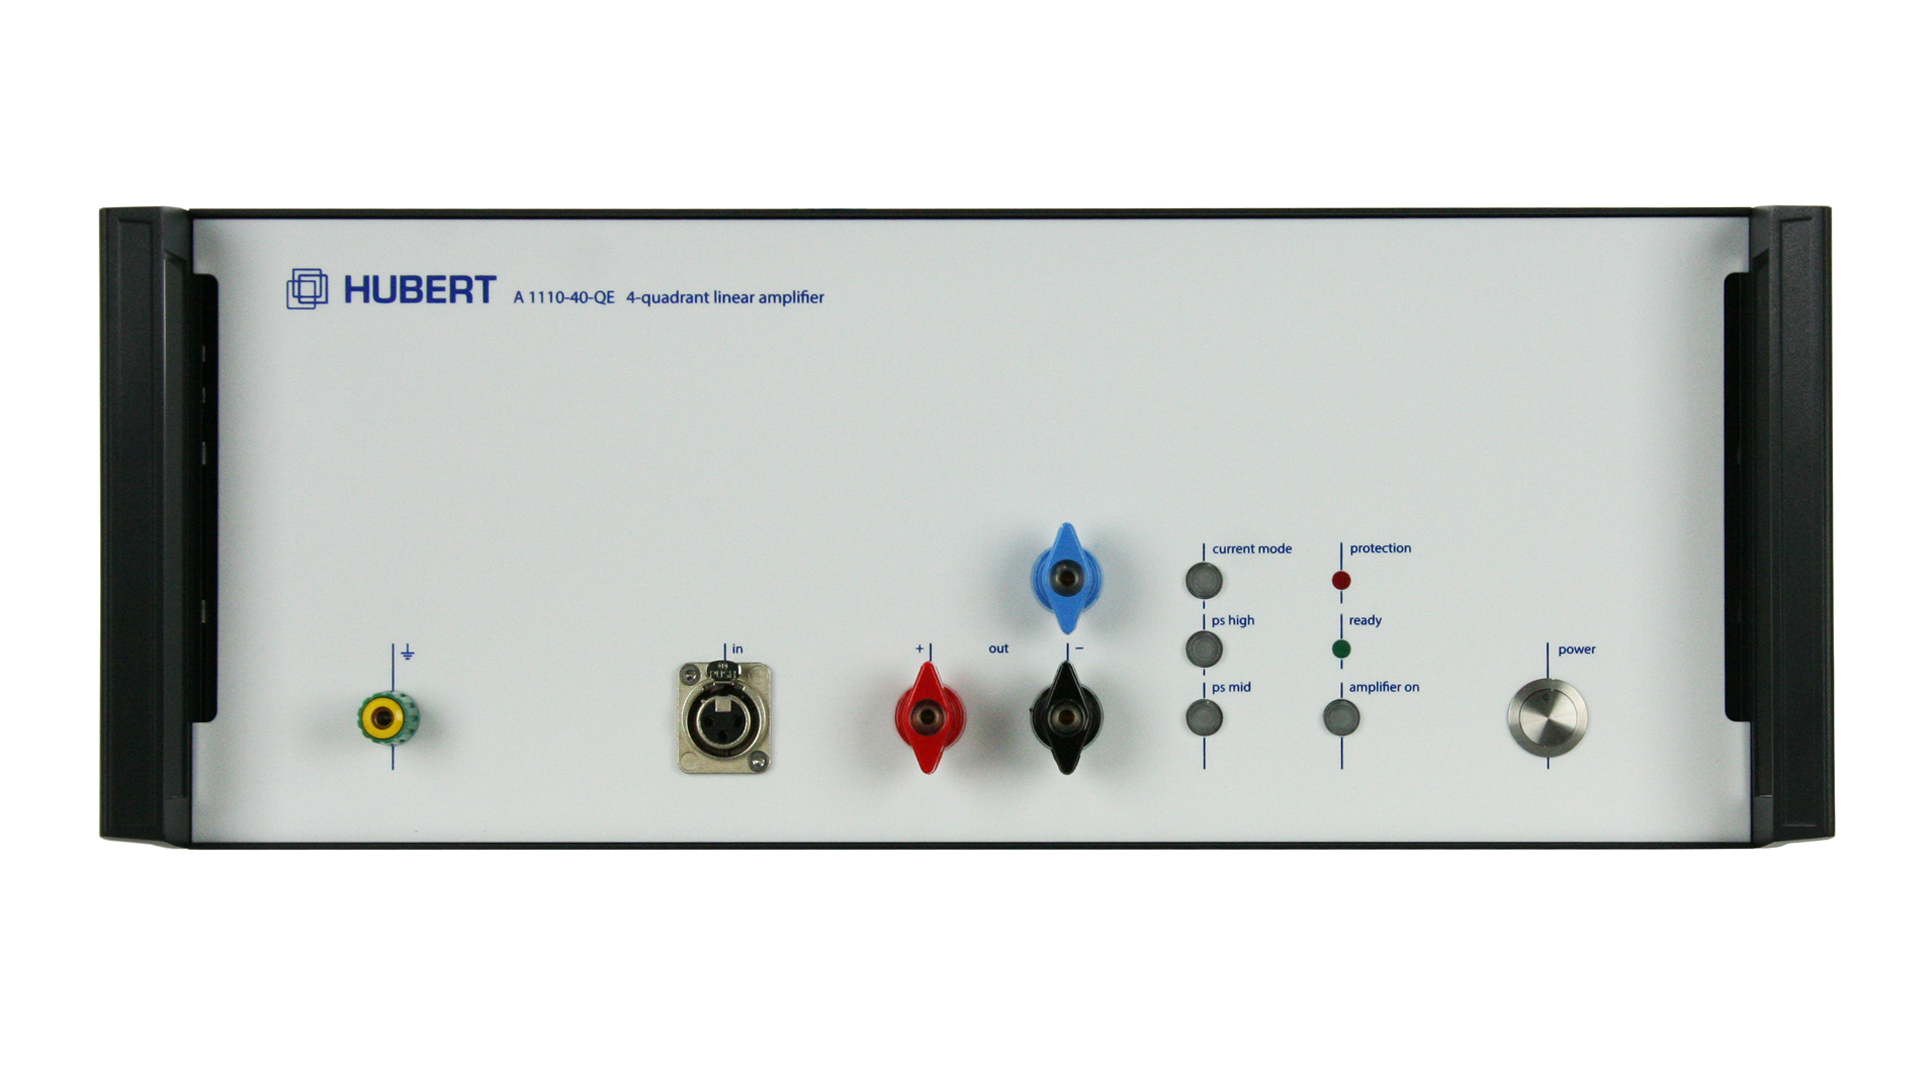 HUBERT A 1110-16-QE linear amplifier